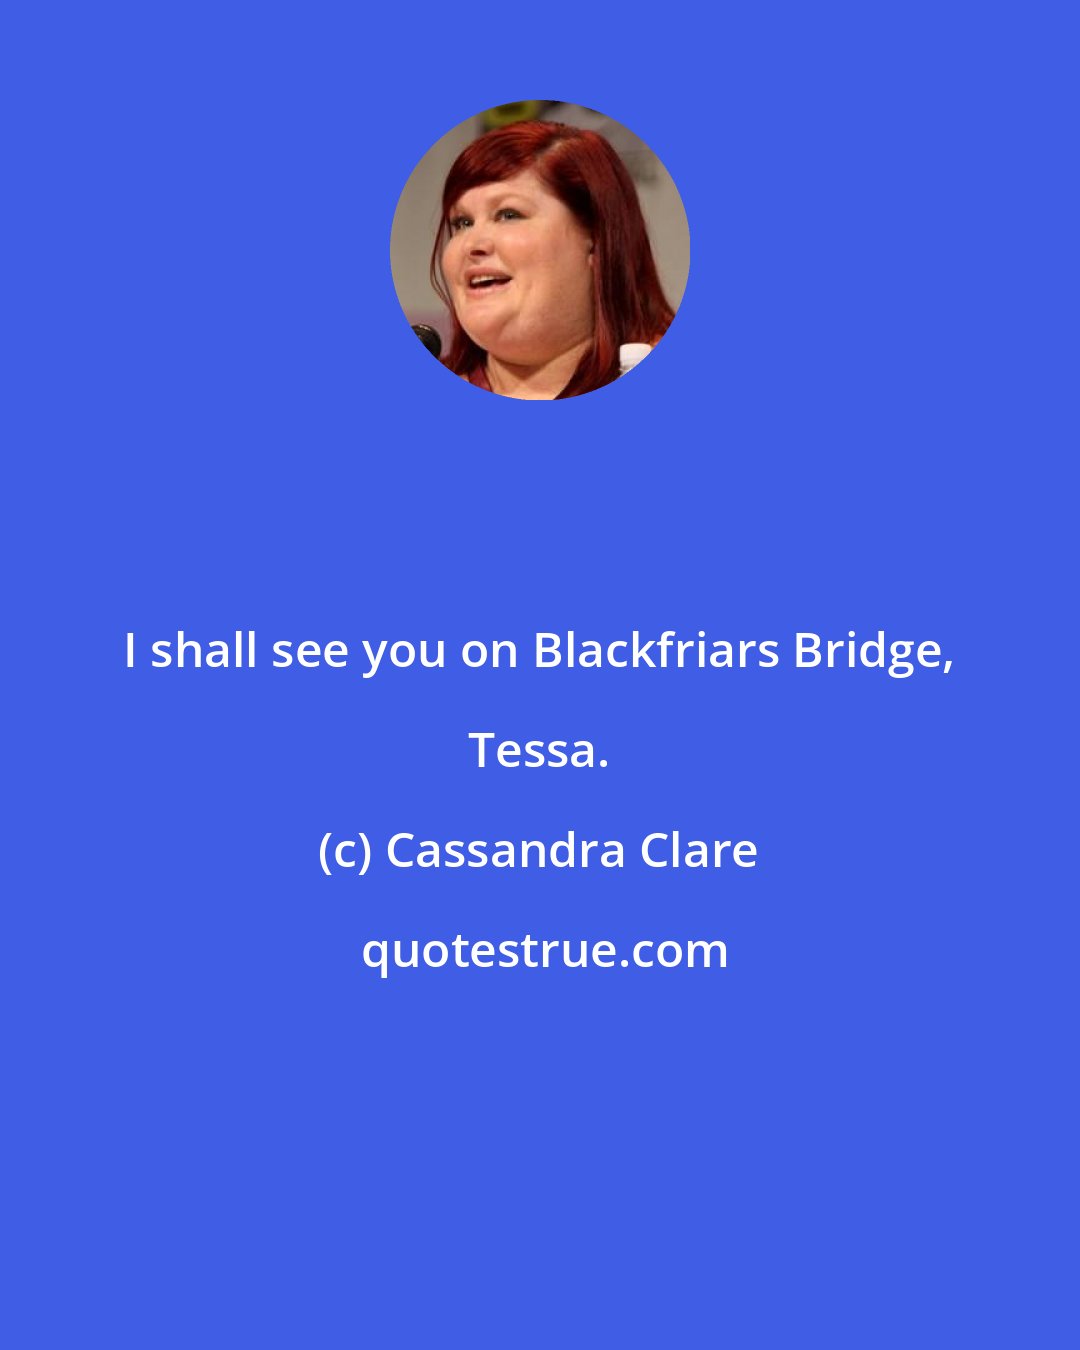 Cassandra Clare: I shall see you on Blackfriars Bridge, Tessa.